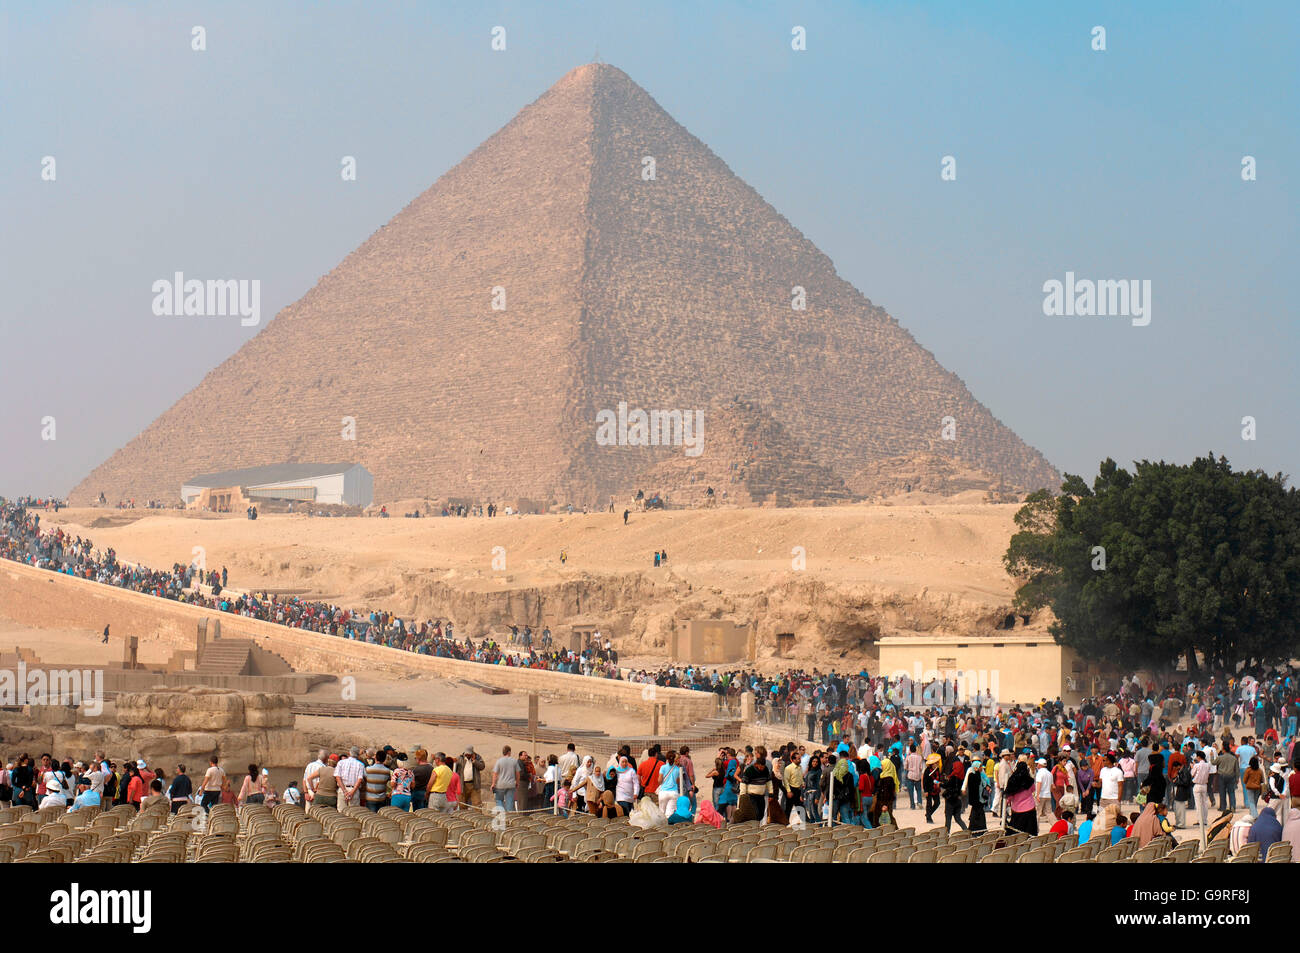 La grande pyramide de Gizeh, barge solaire, les touristes, les pyramides de Gizeh, Giza, Egypte / pyramide de Chéops Banque D'Images